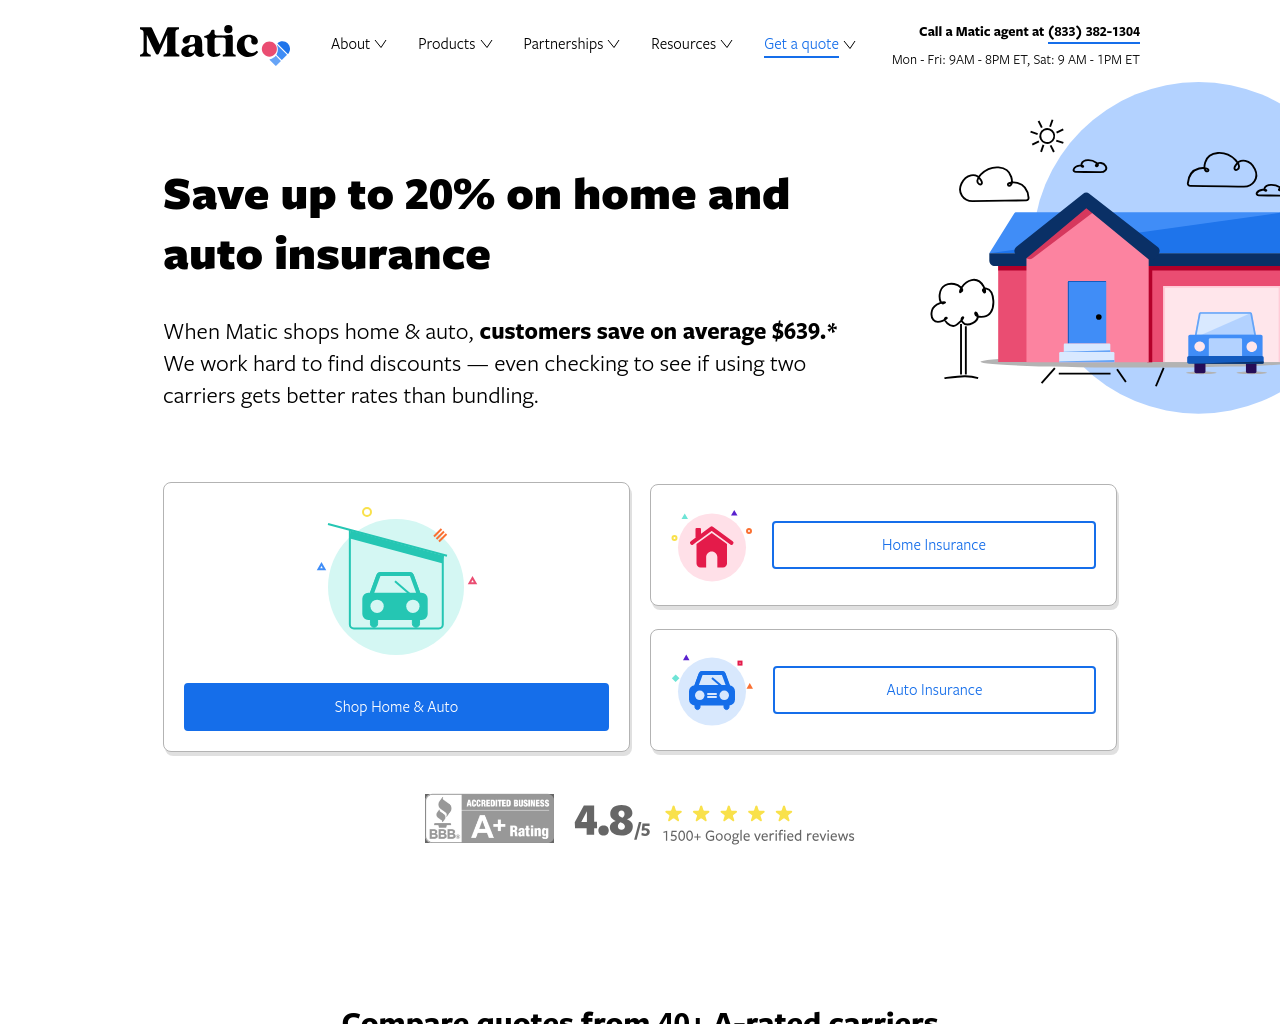 matic.com